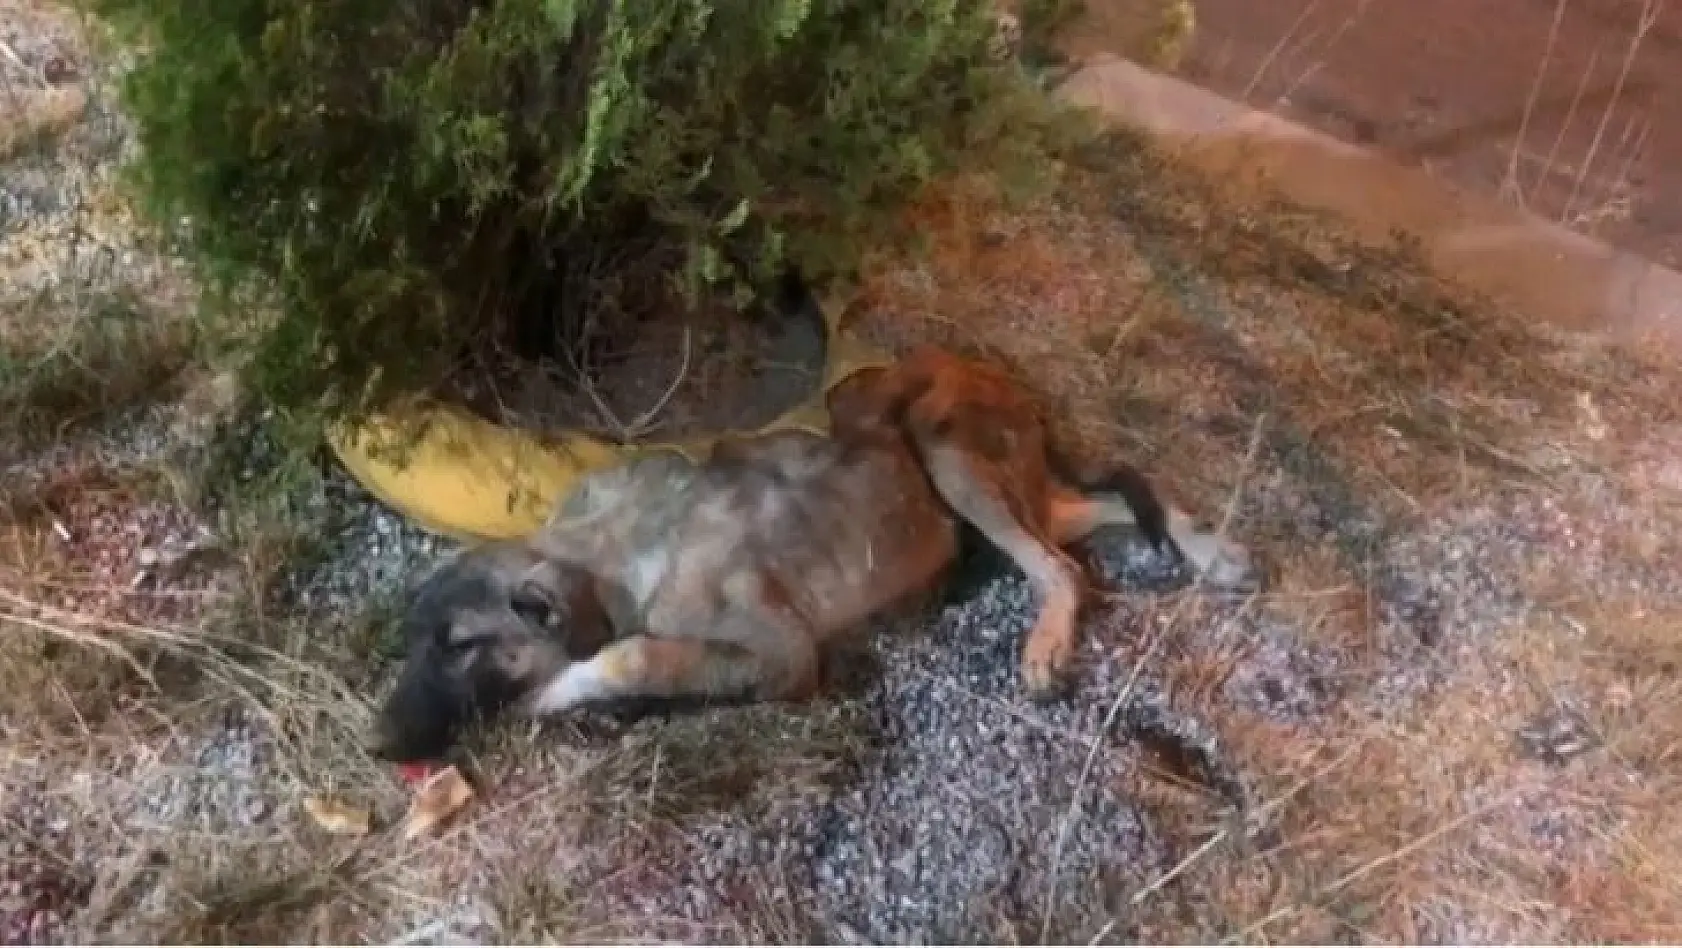 Bingöl'de bitkin halde bulunan köpek tedavi altına alındı